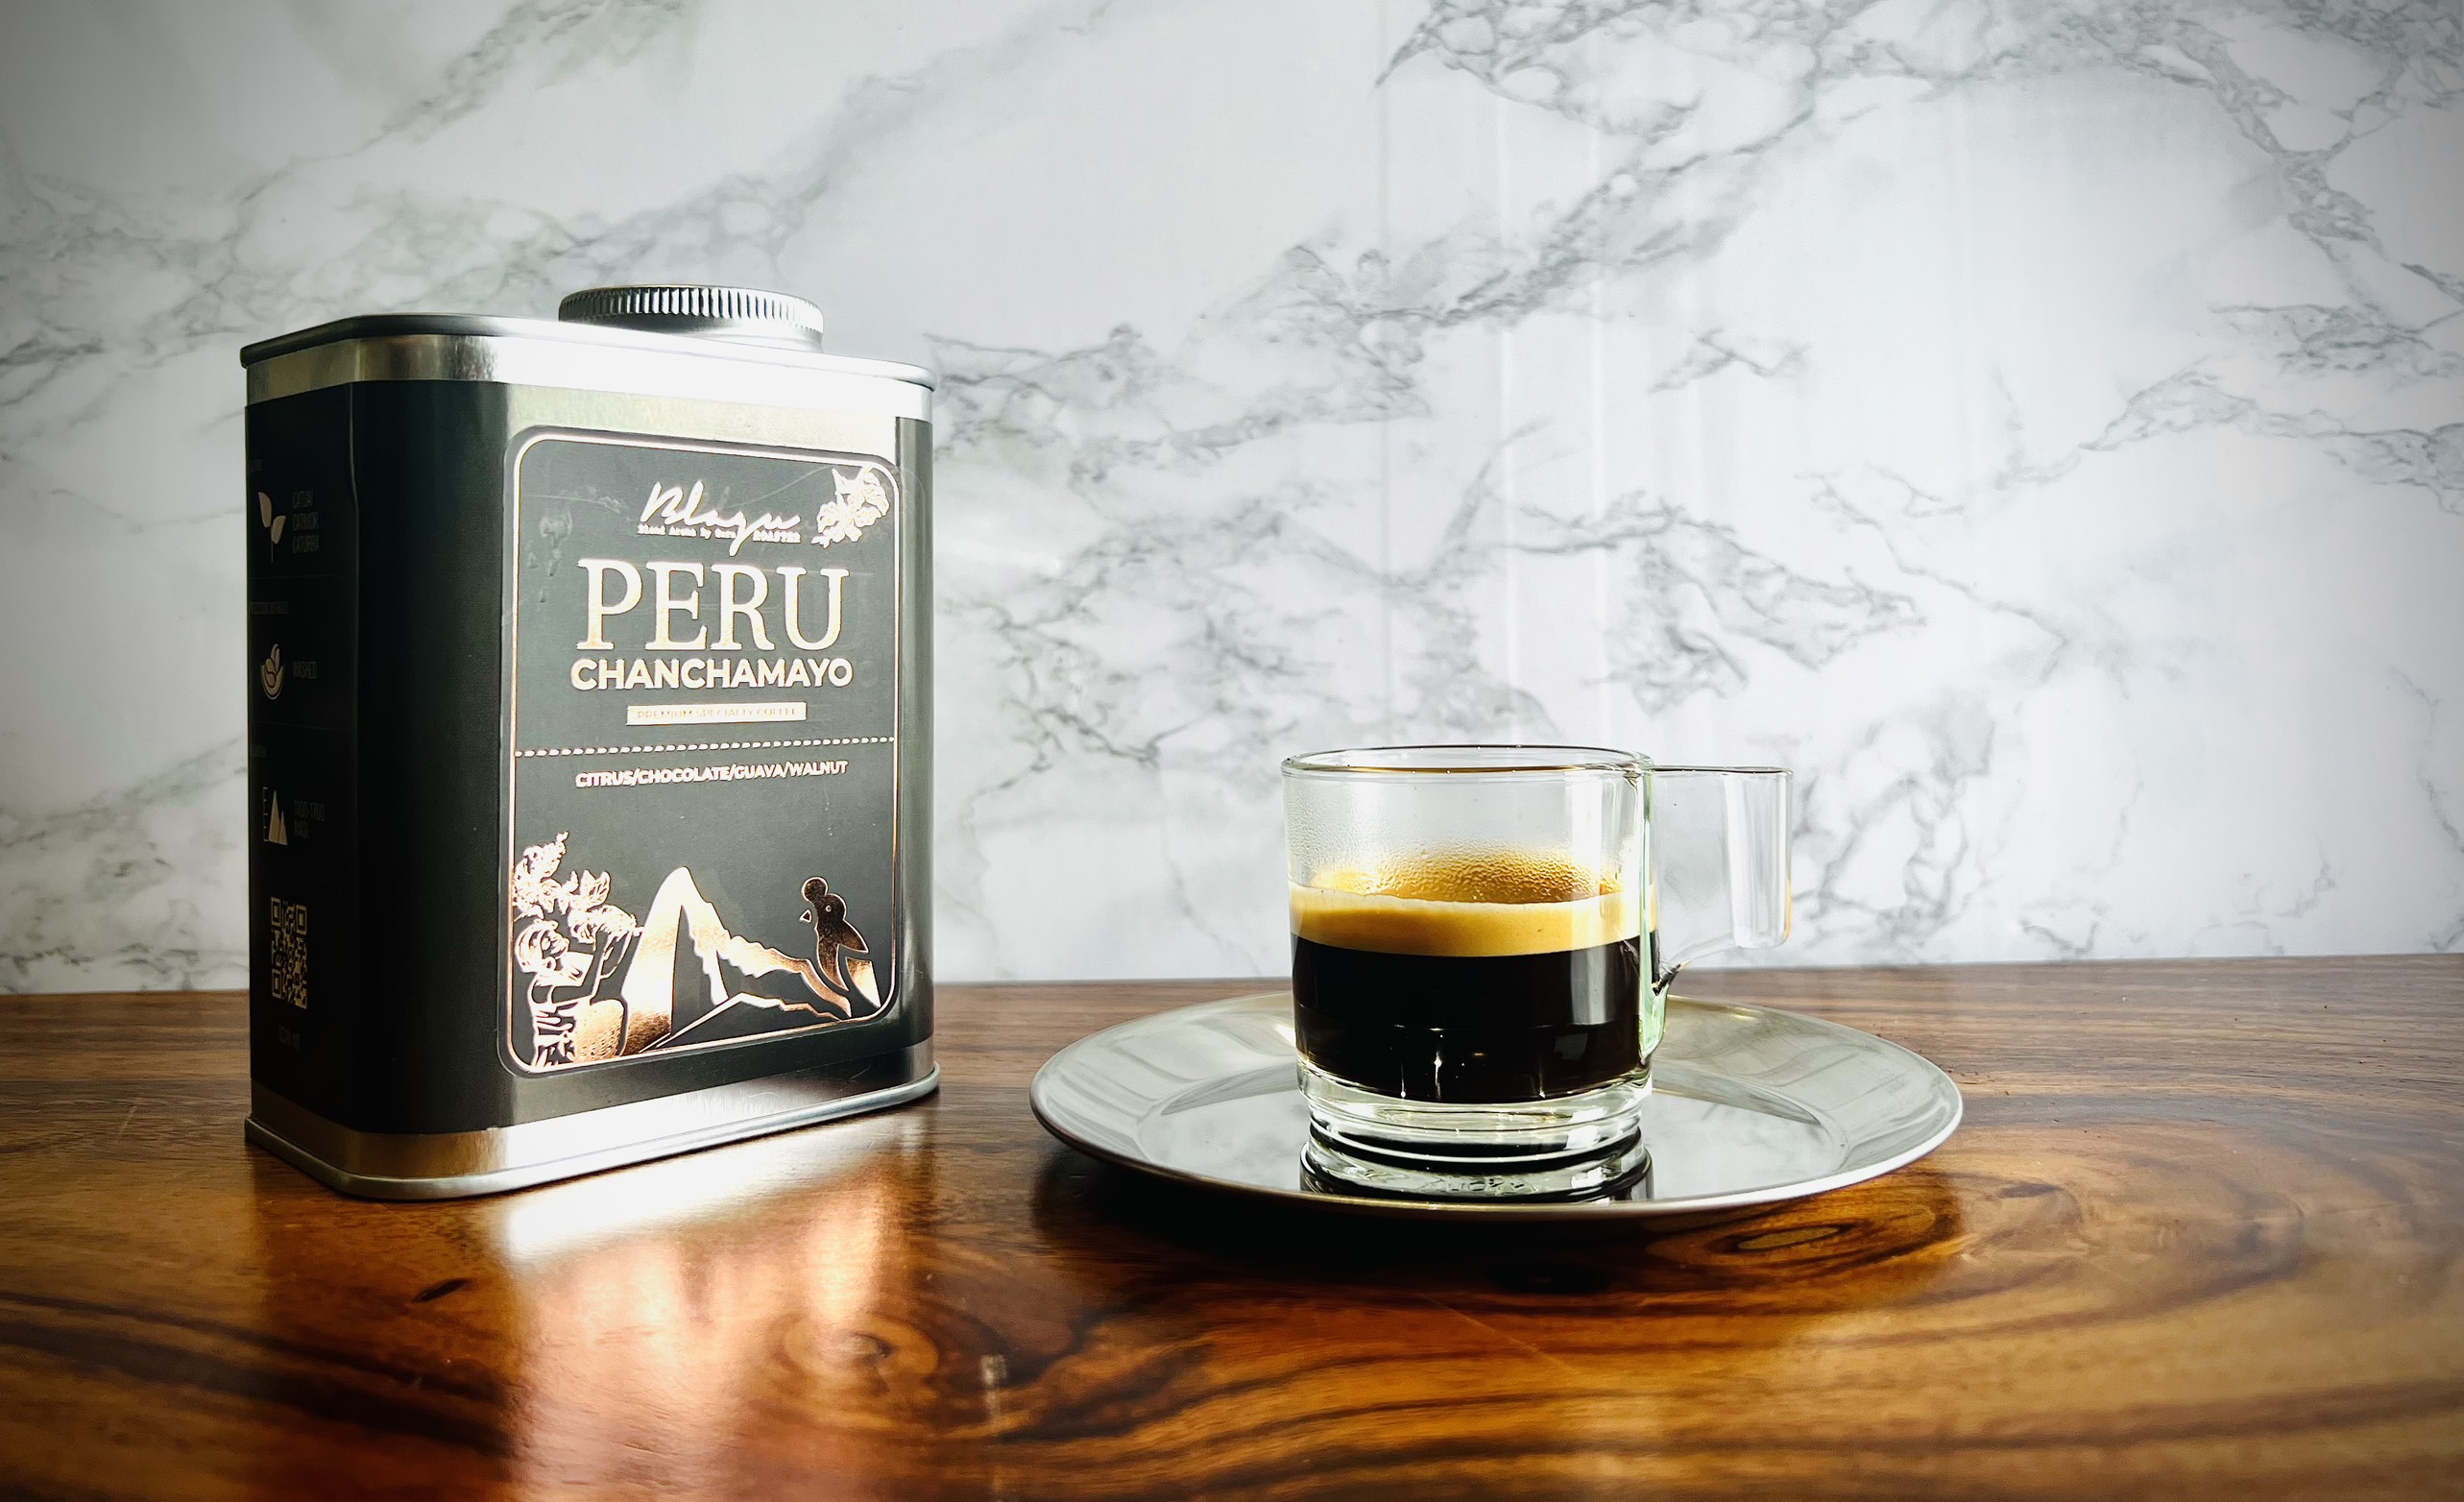 [Premium] Cà phê Blagu dòng cao cấp Arabica - Vùng Peru Chanchamayo - Rang Medium -250g | Specialty Coffee